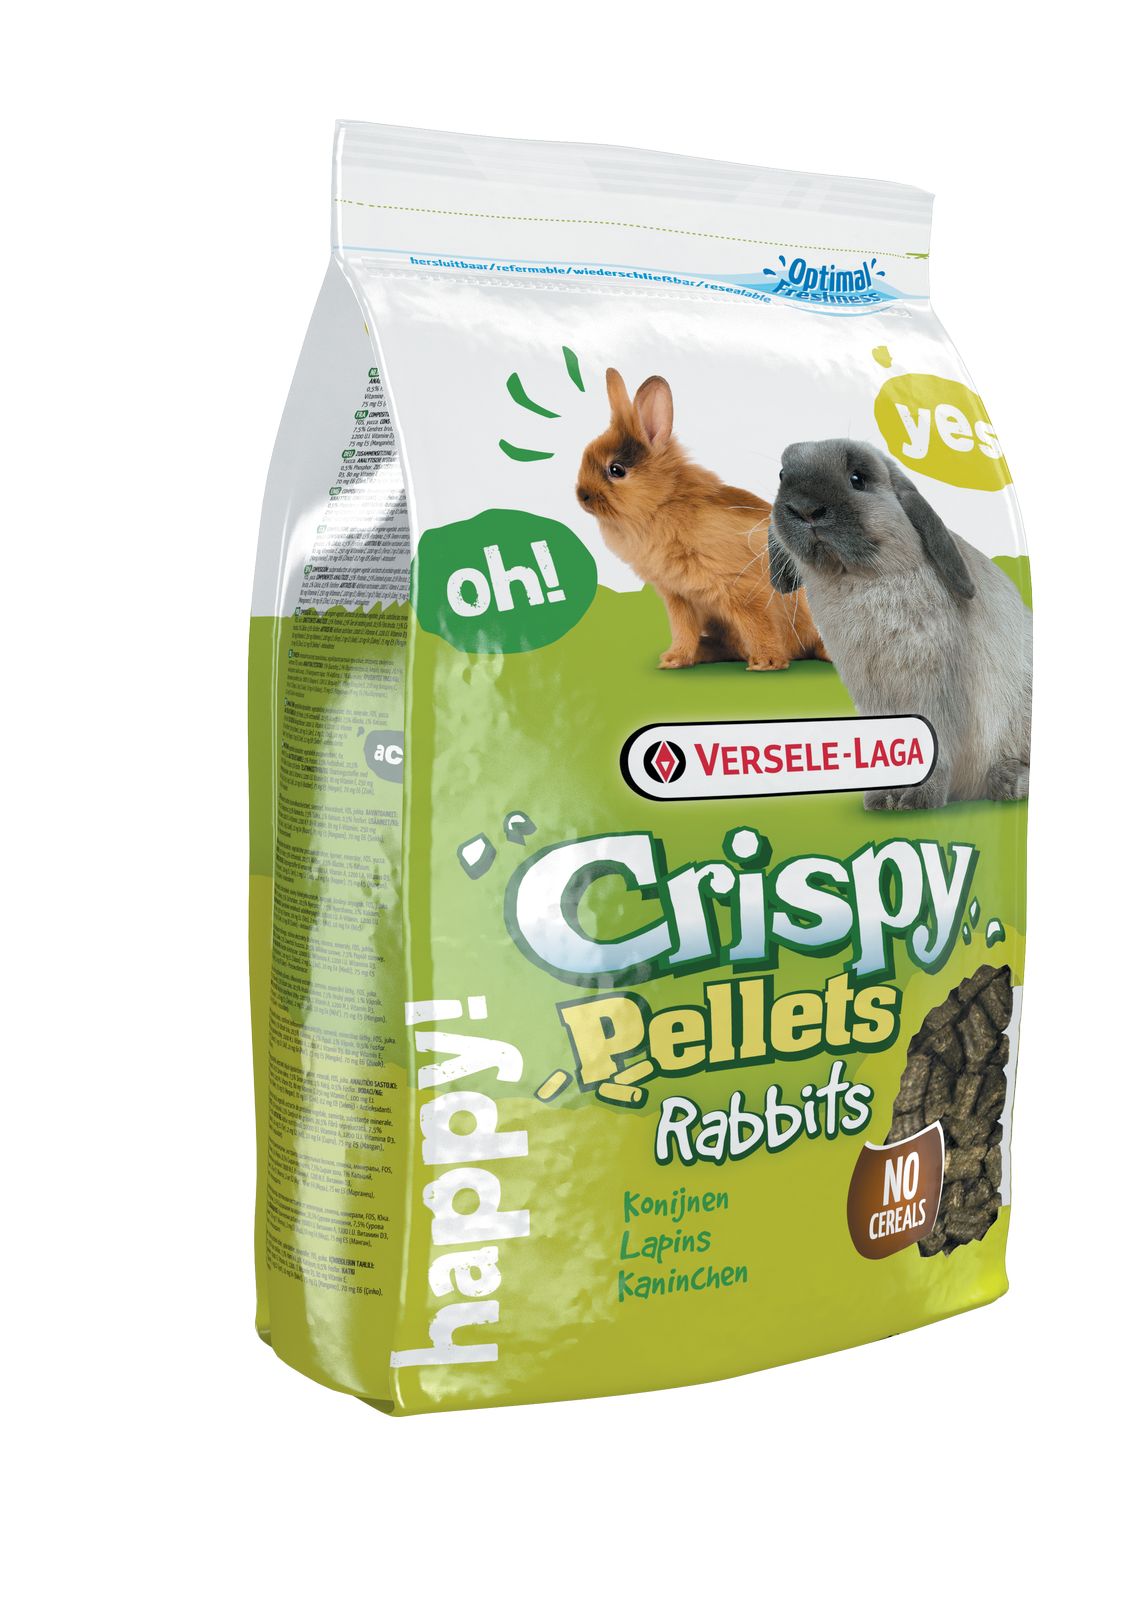 Crispy Pellets - Rabbits